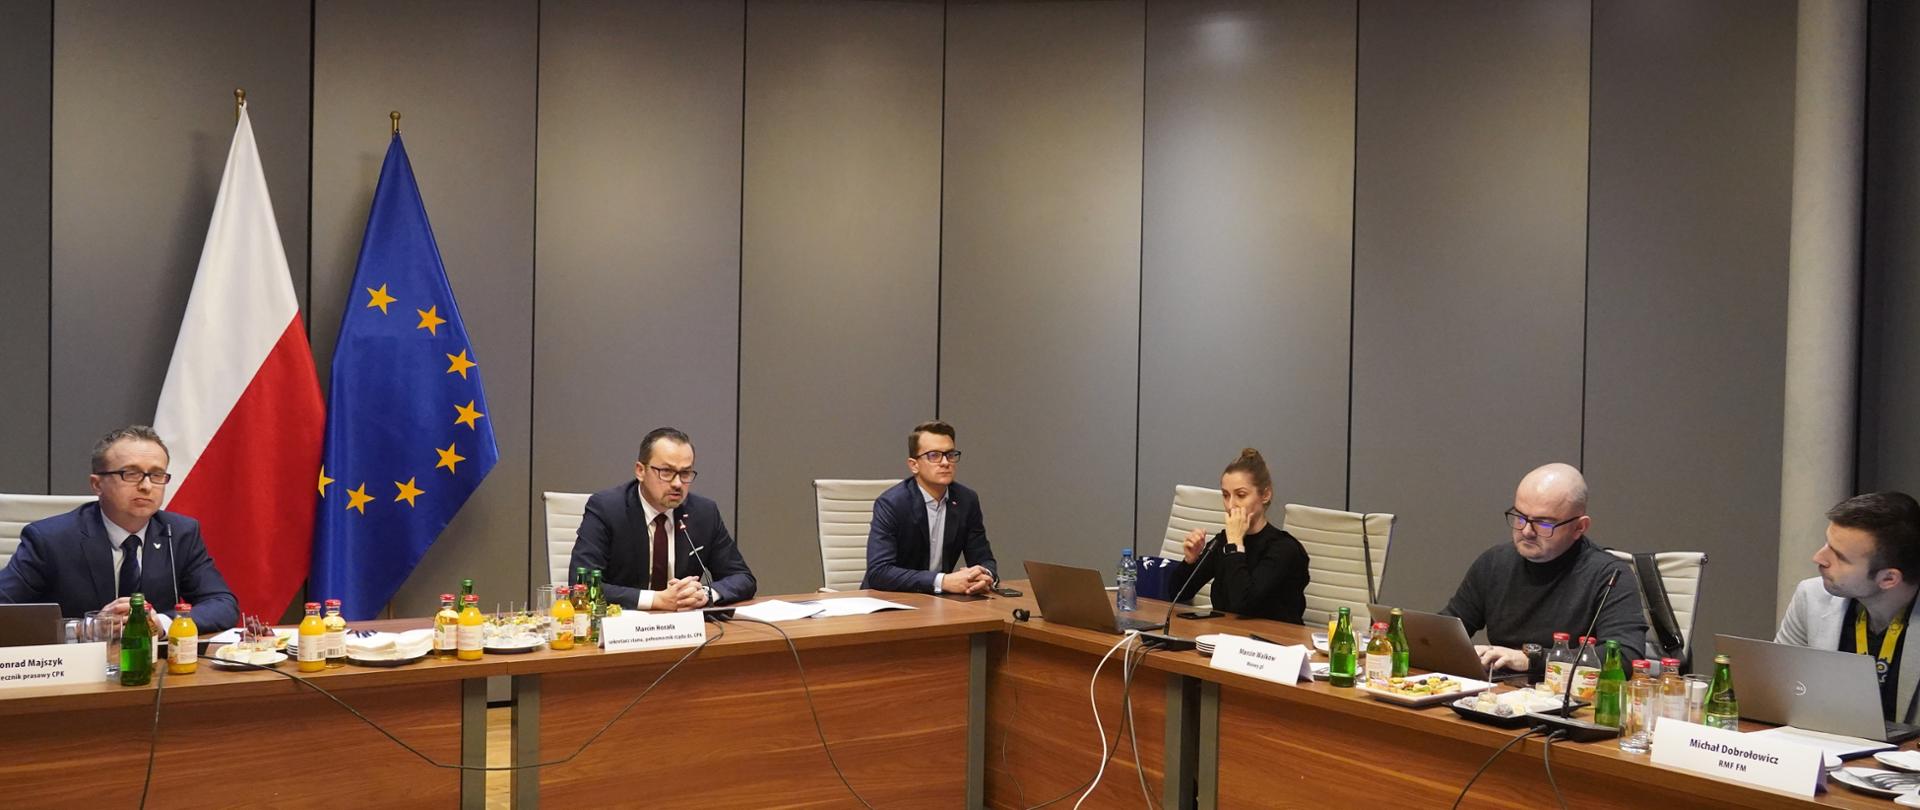 Sześć osób siedzi przy prostokątnym stole. Drugi od prawej siedzi wiceminister Marcin Horała. W tle za jego plecami stoją flagi Polski i Unii Europejskiej. 